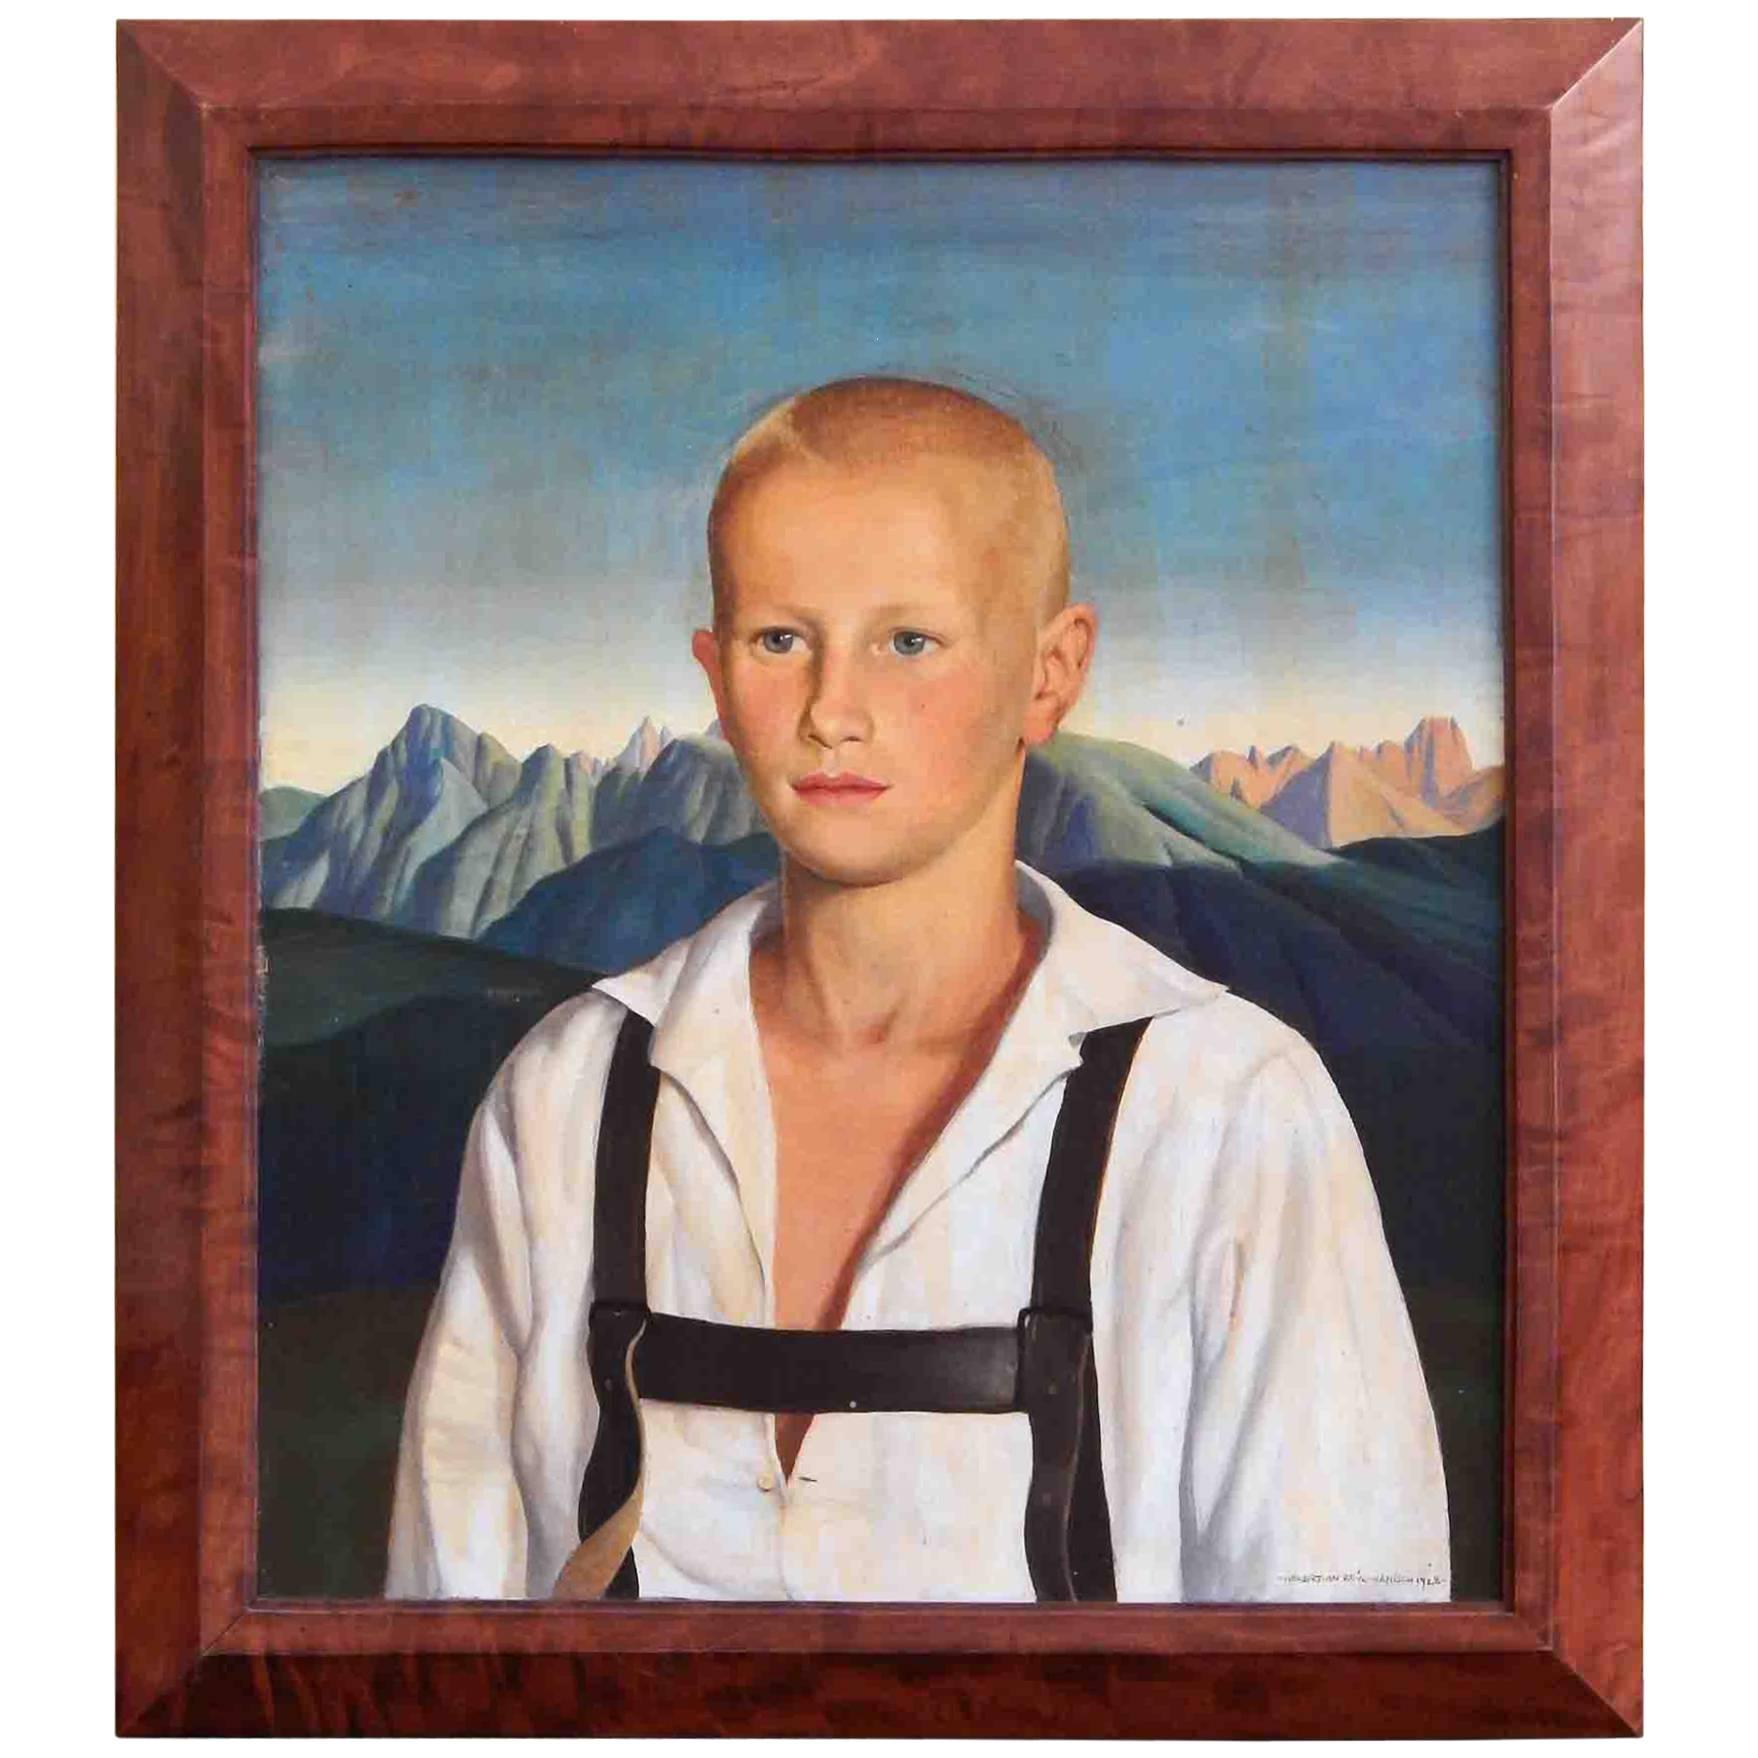 "Blond Youth with Lederhosen, " Portrait by Reyl-Hanisch